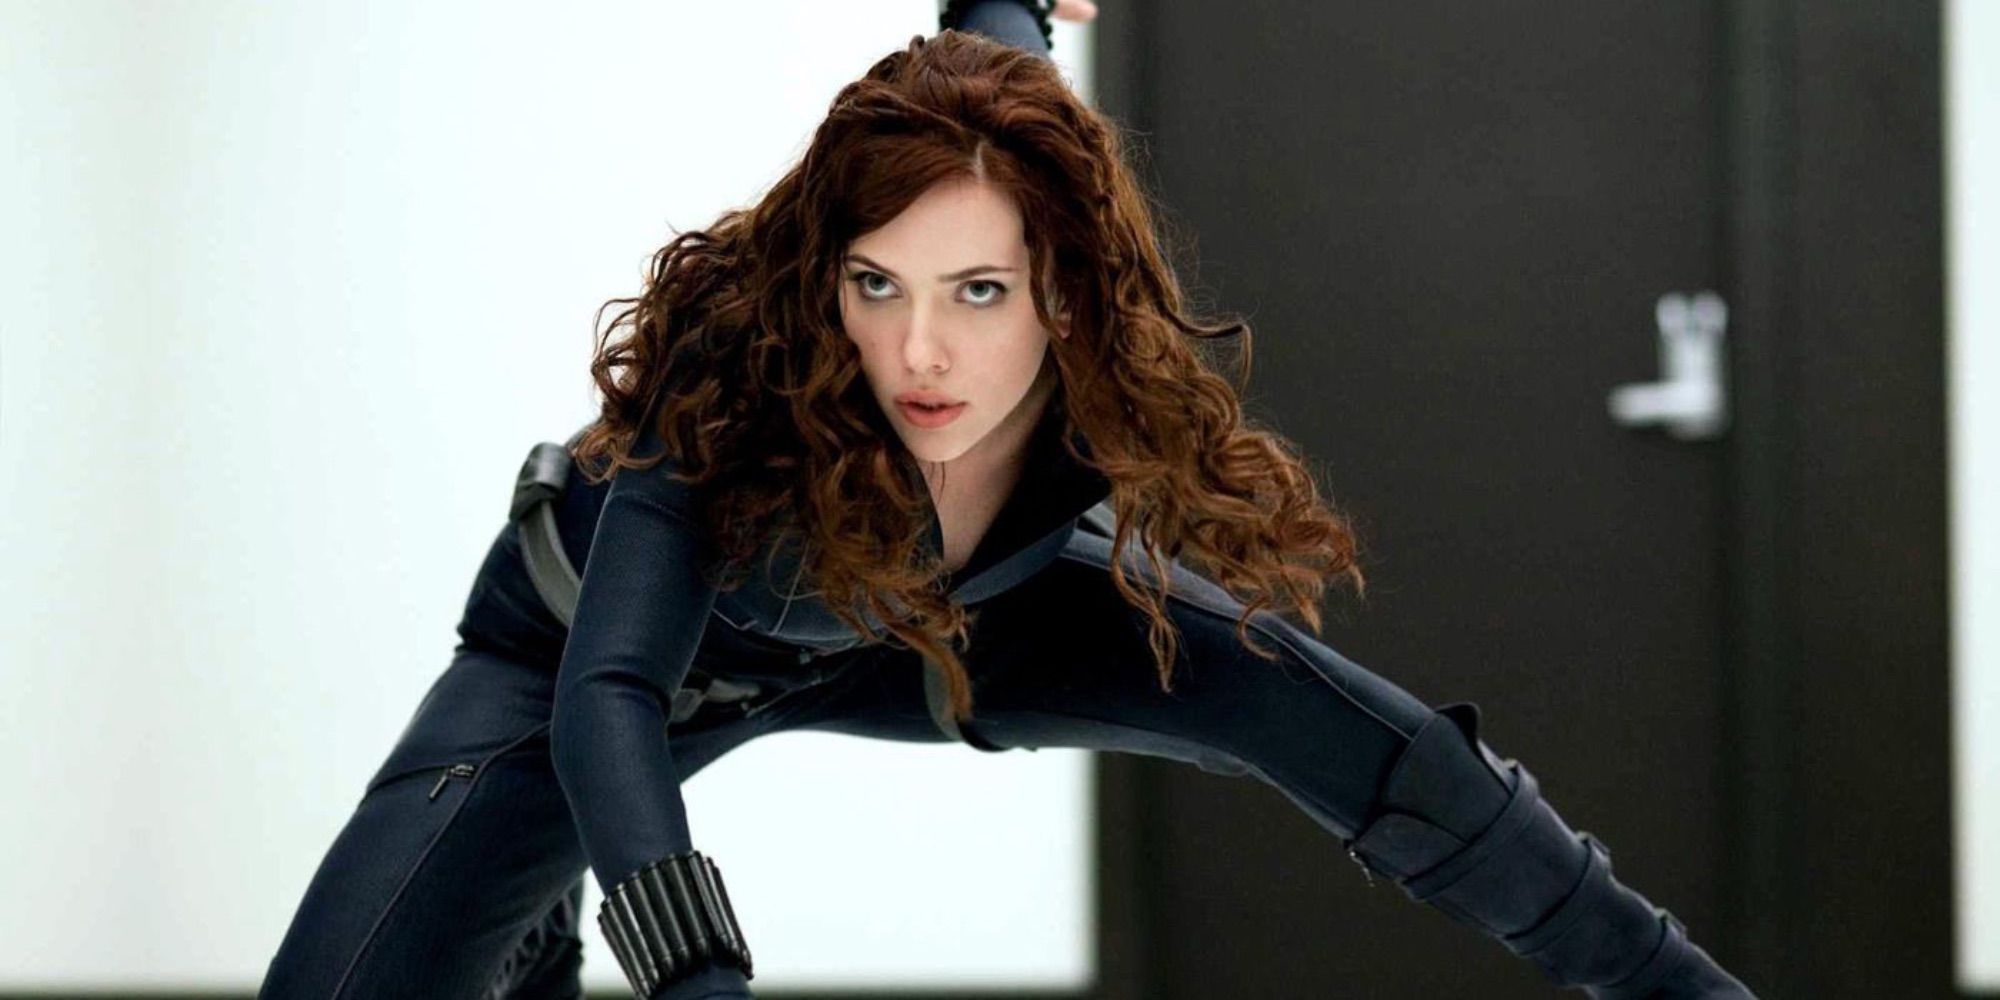 Scarlett Johannson as Black Widow pre combat in Iron Man 2